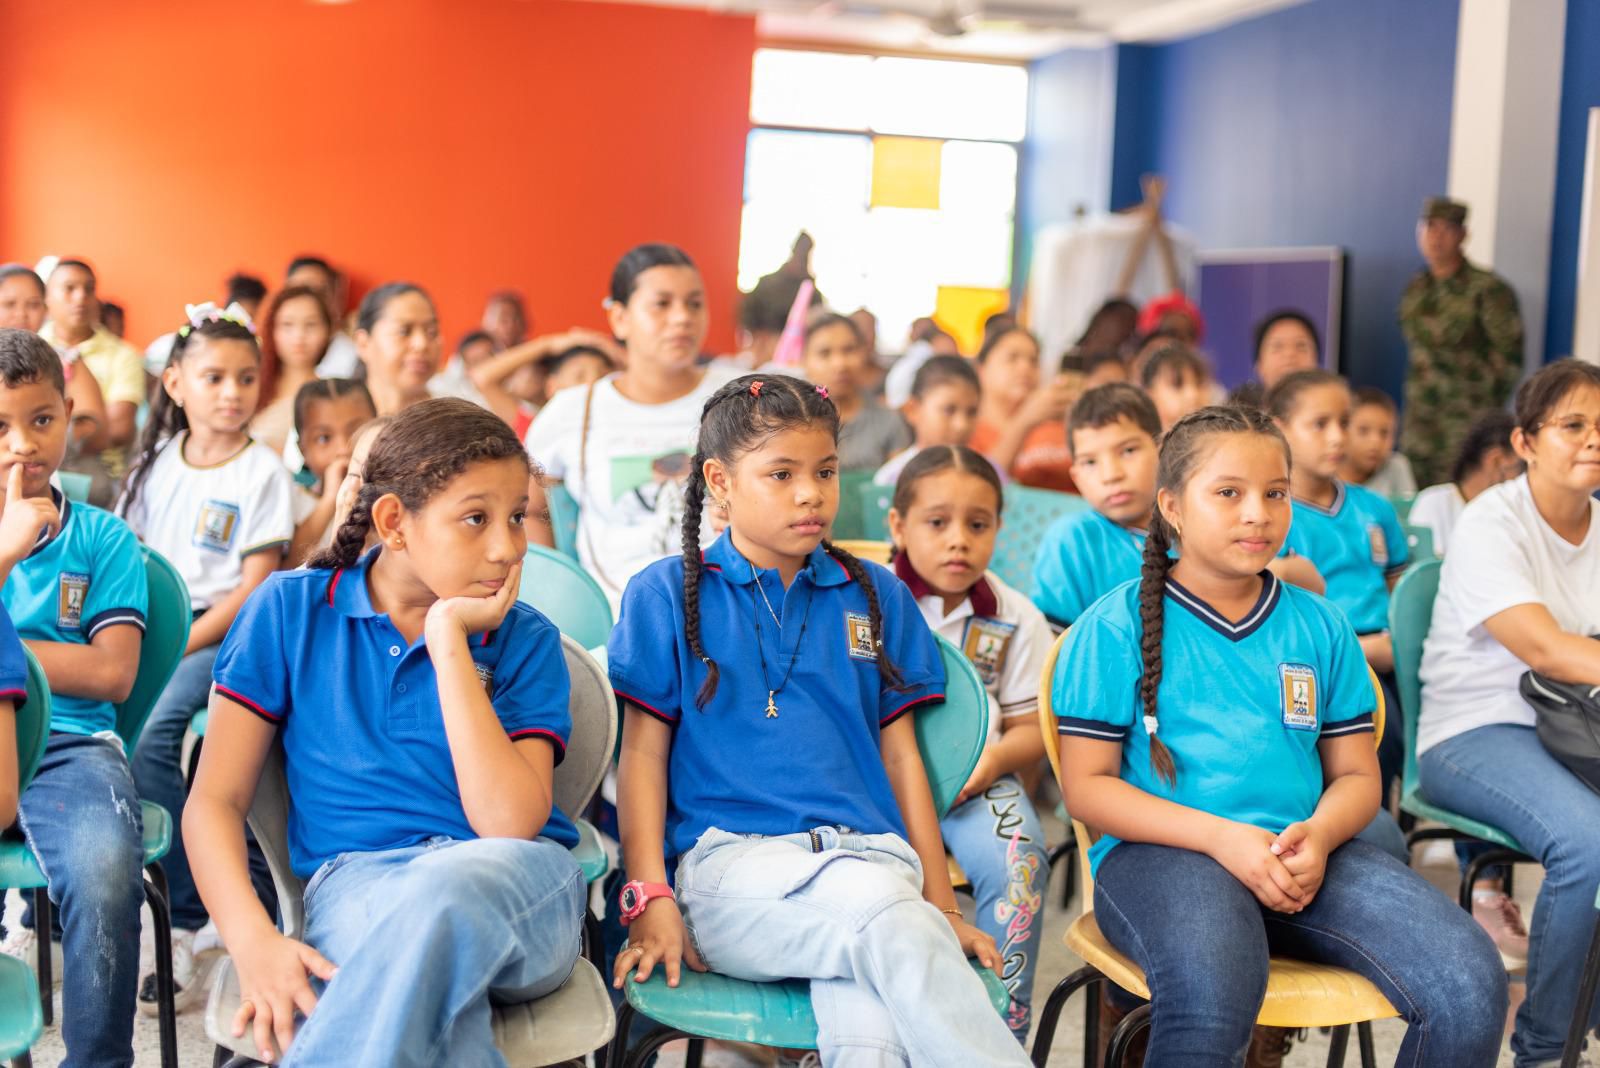 Lanzamiento del Mes de la Niñez: Gestora Social de Montería invita a niños y familias a una tarde de cultura en La Ronda Vive